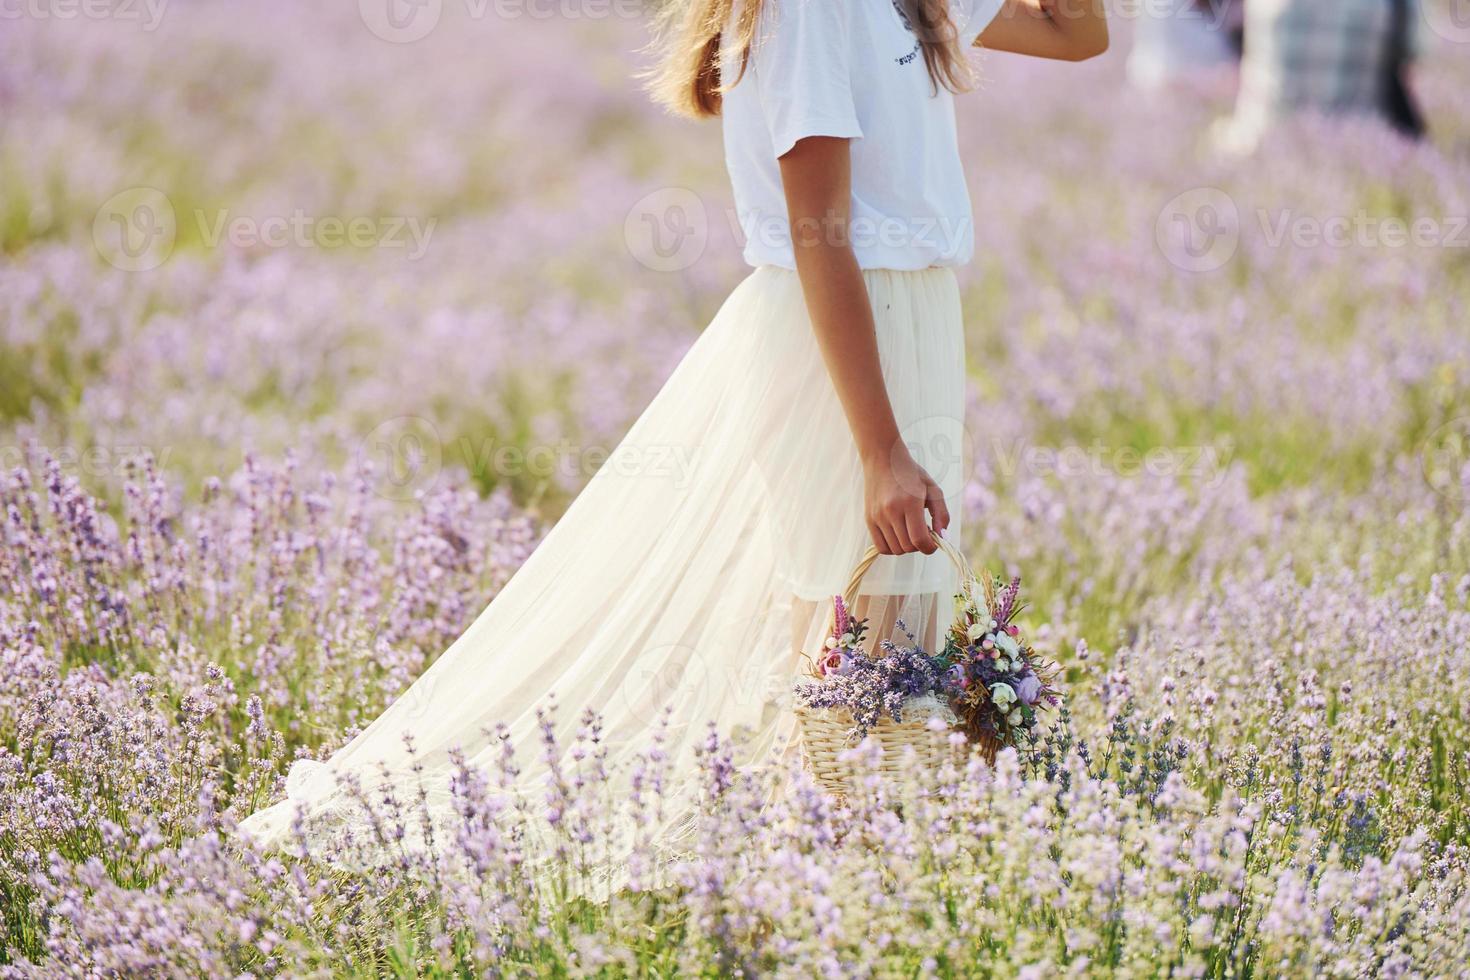 vue rapprochée d'une femme en belle robe blanche qui utilise un panier pour recueillir la lavande dans le champ photo